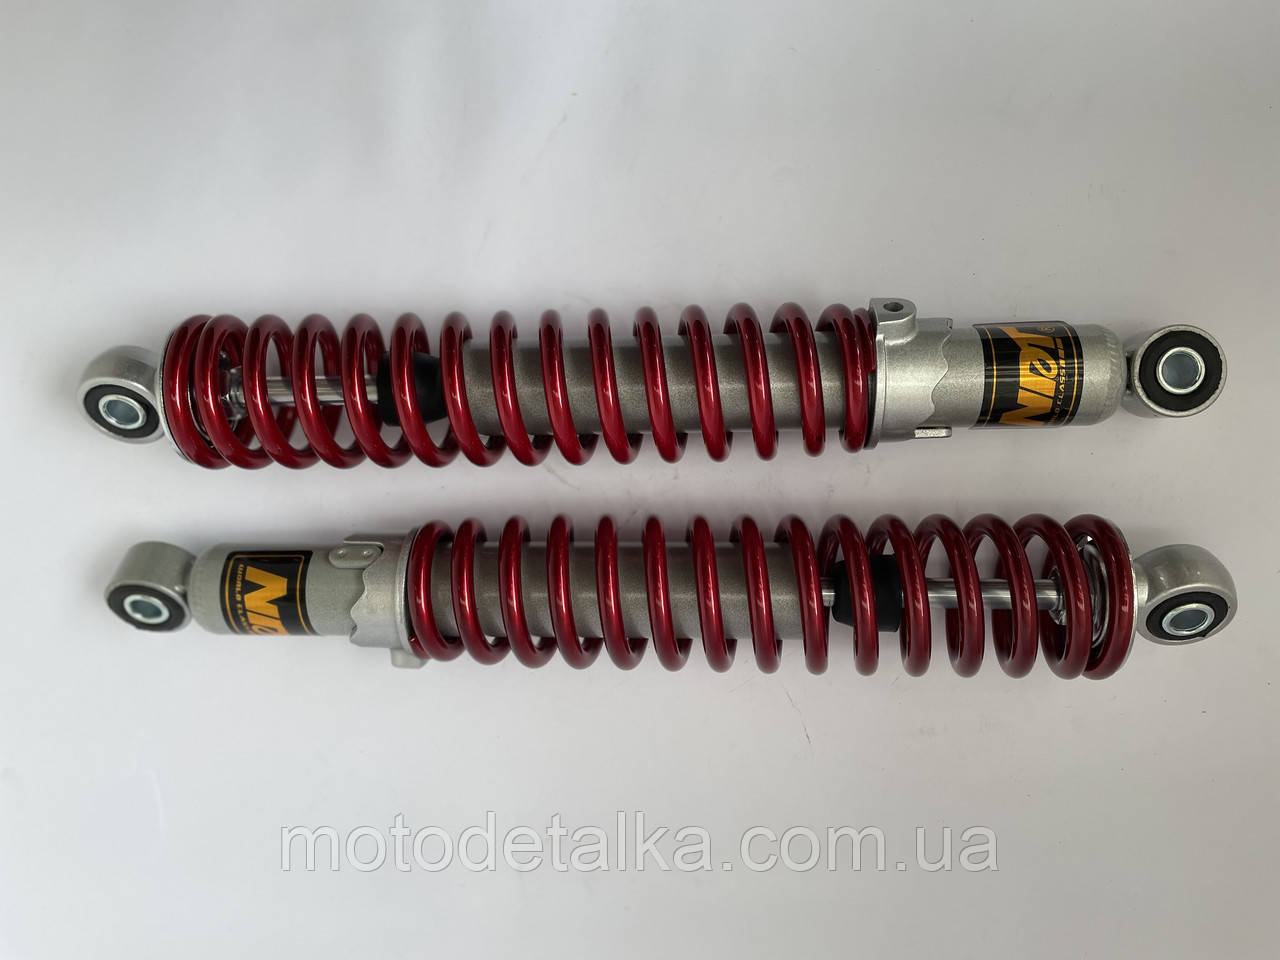 Амортизаторы (пара) Дельта,Альфа,Сабур  340mm, красные  NDT.